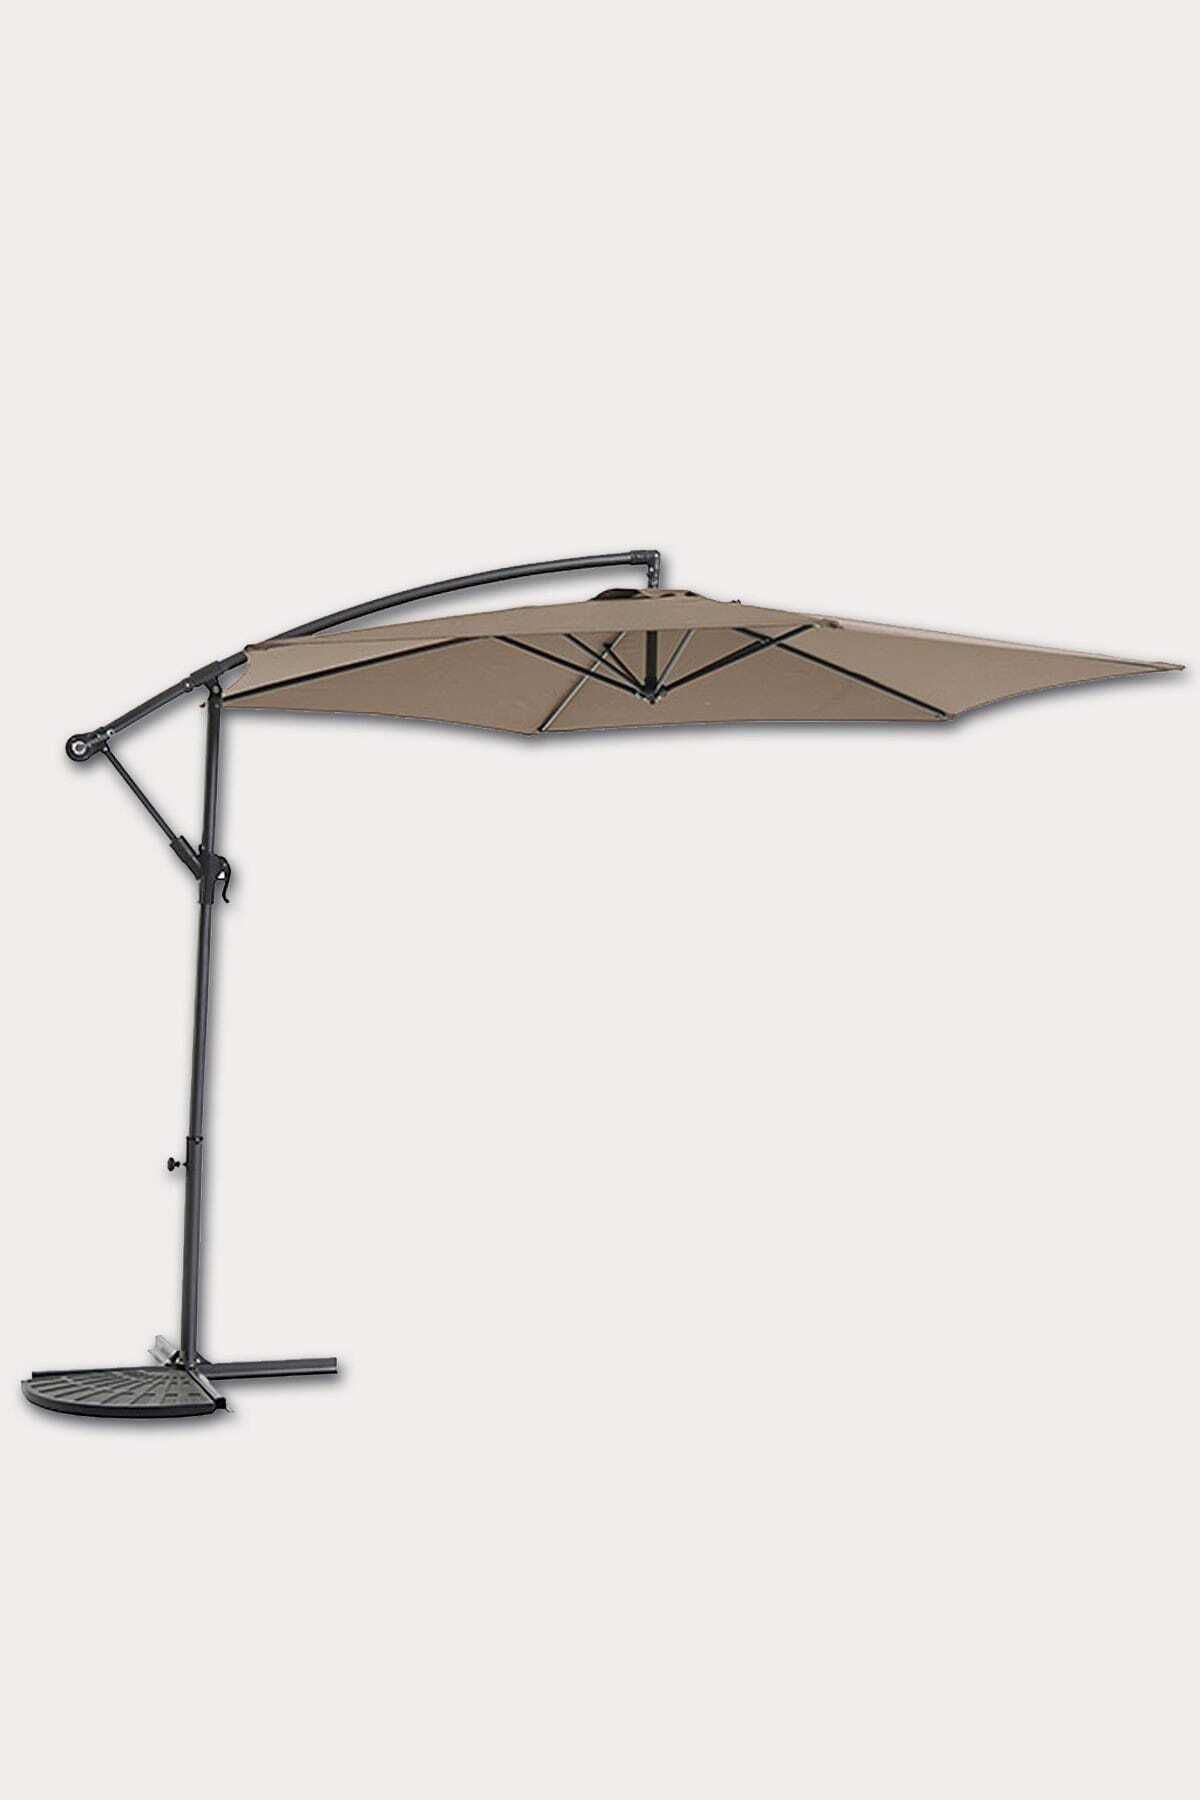 Sunfun Kahverengi 3 Metre Ayaklı Ampül Şemsiye Polyester Örtülü